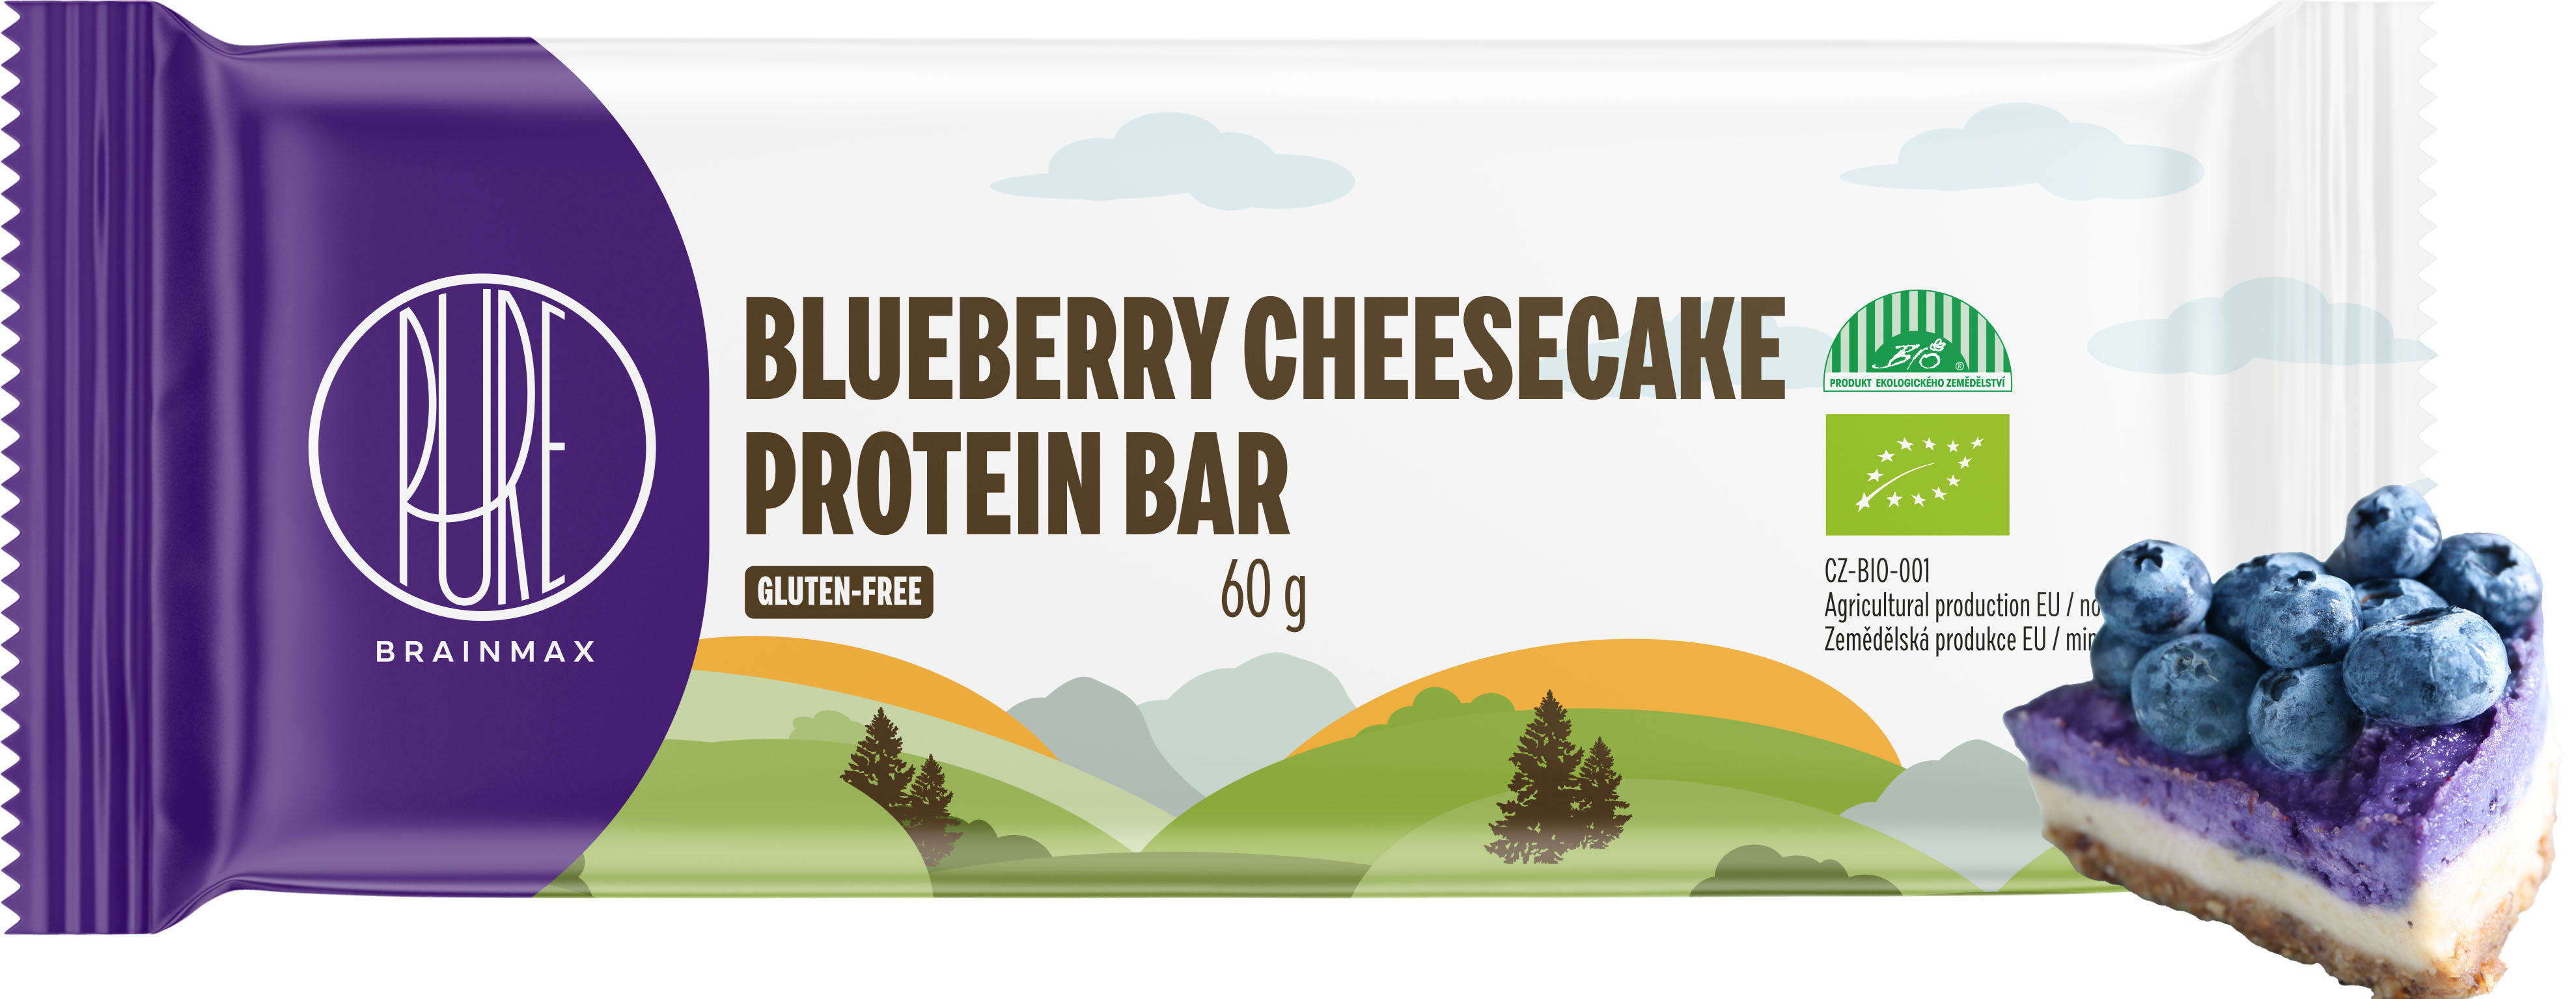 BrainMax Pure Blueberry Cheesecake Protein Bar, Proteinová tyčinka, Borůvkový cheesecake, BIO, 60 g *CZ-BIO-001 certifikát / Protein Bar Blueberry Cheesecake